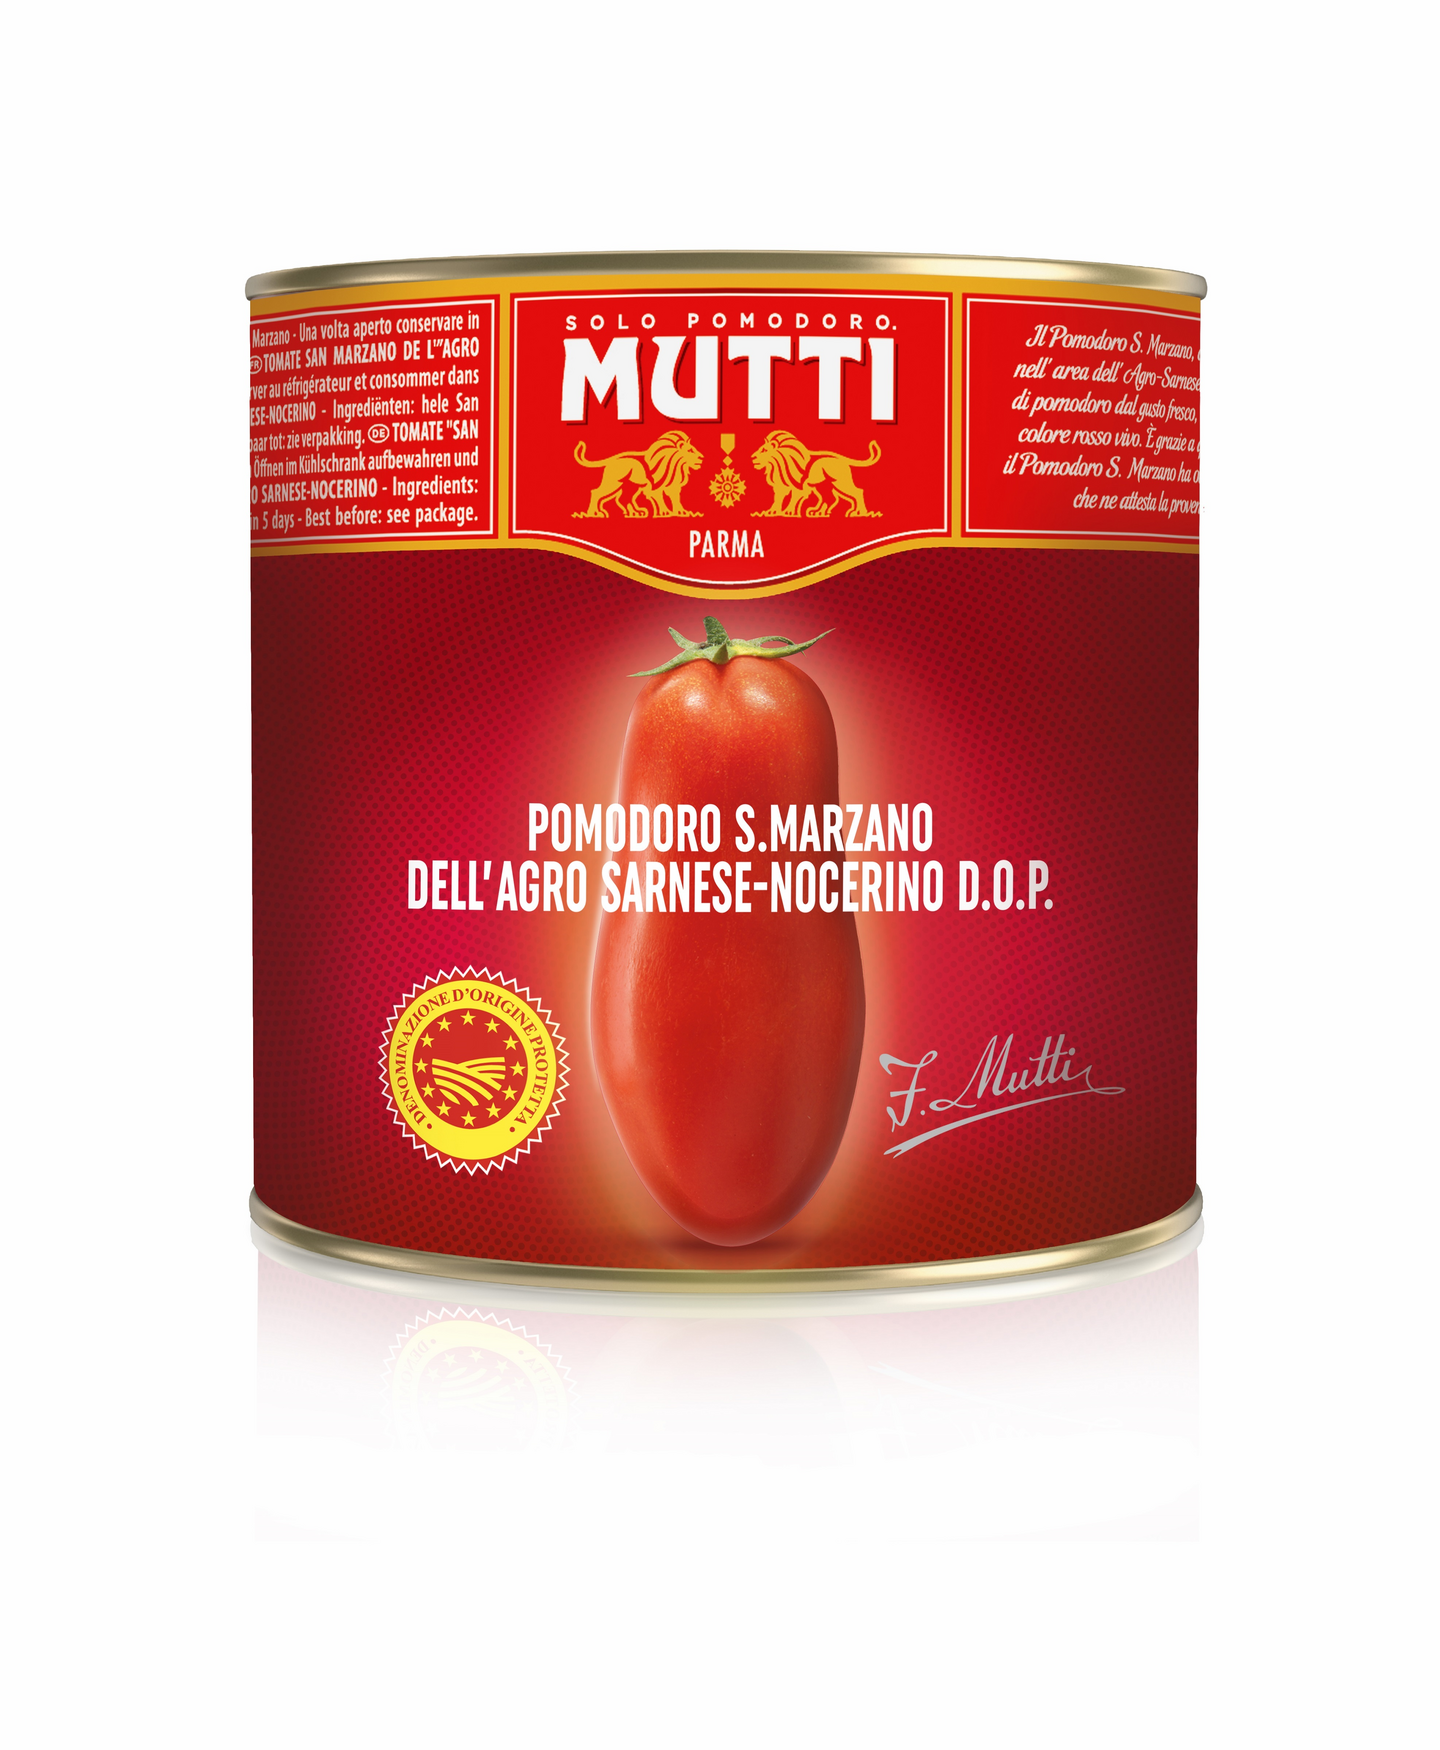 Mutti kokonaiset kuoritut San Marzano -tomaatit 2,5kg/1,625kg